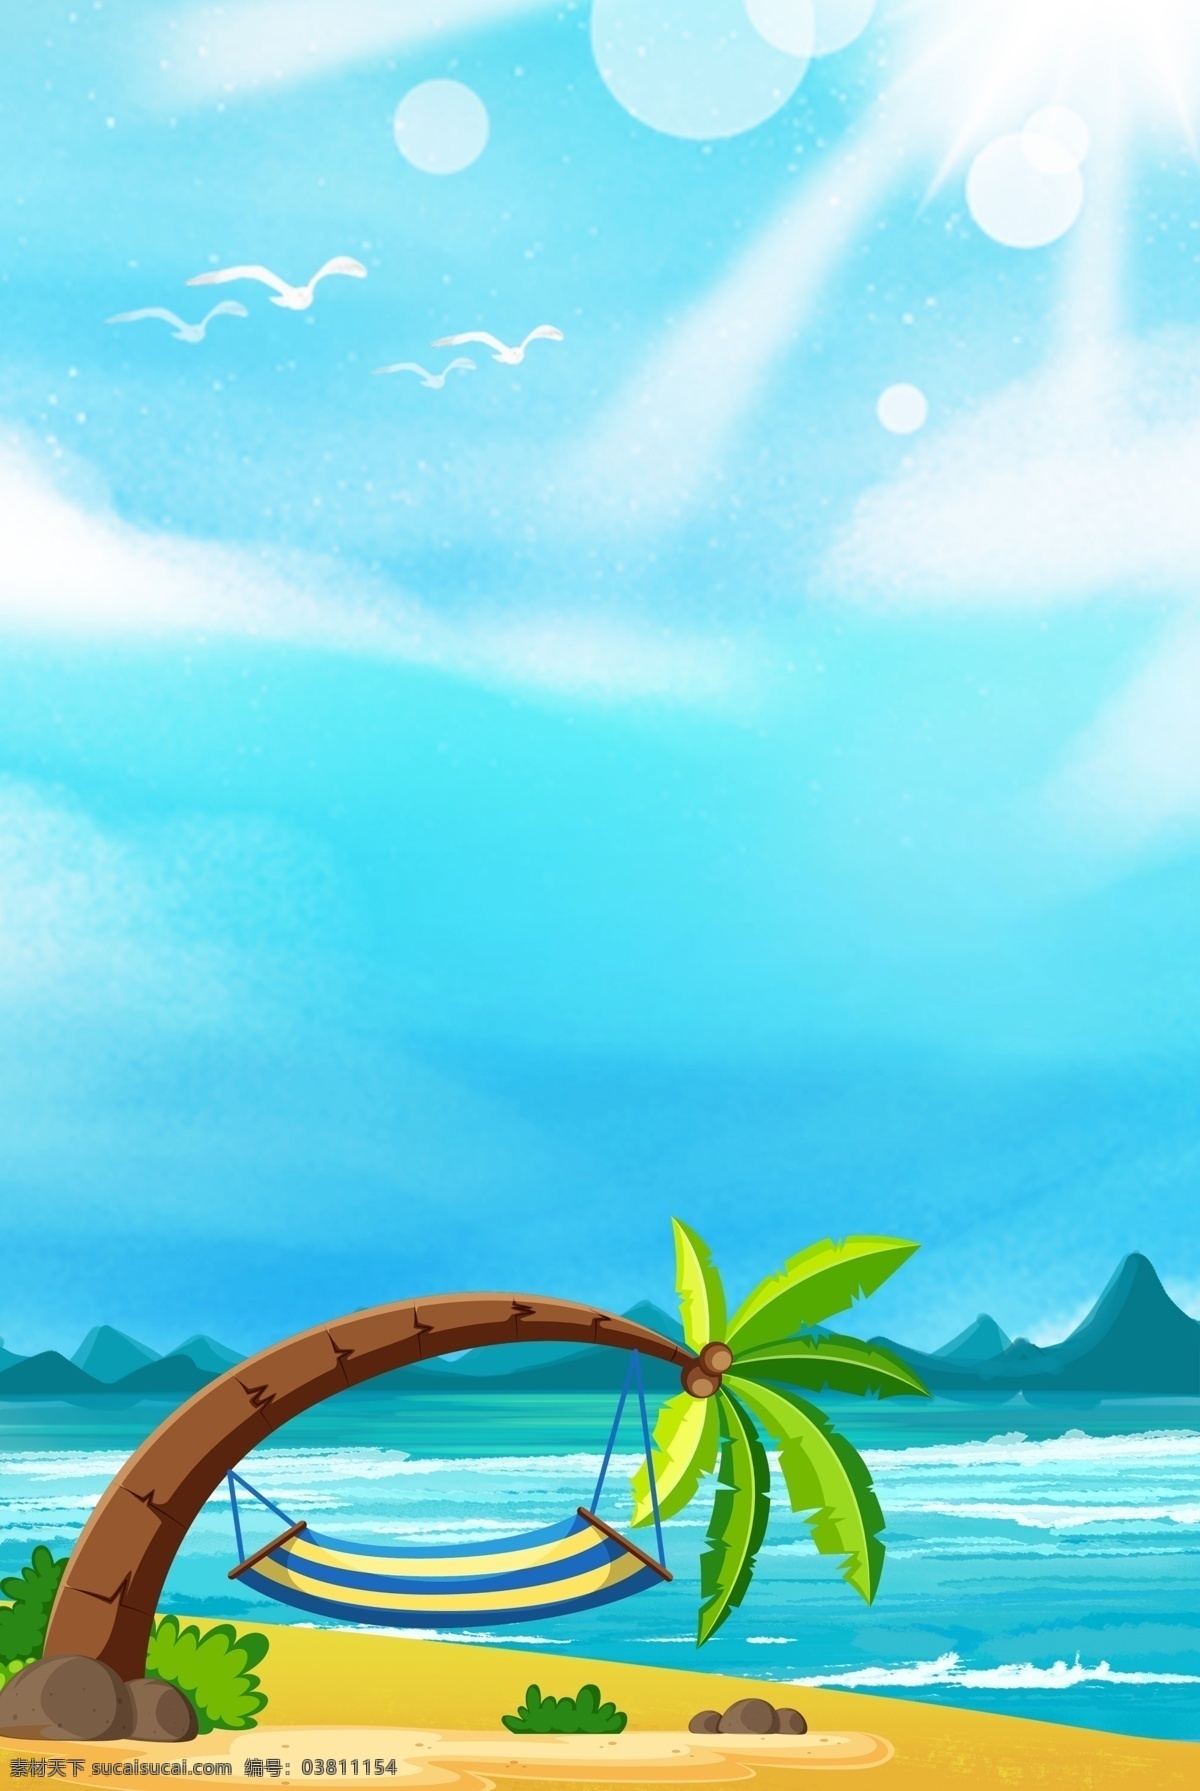 海边 风景 创意 背景 合成 简约 卡通 椰子树 海岛 山水 海边风景